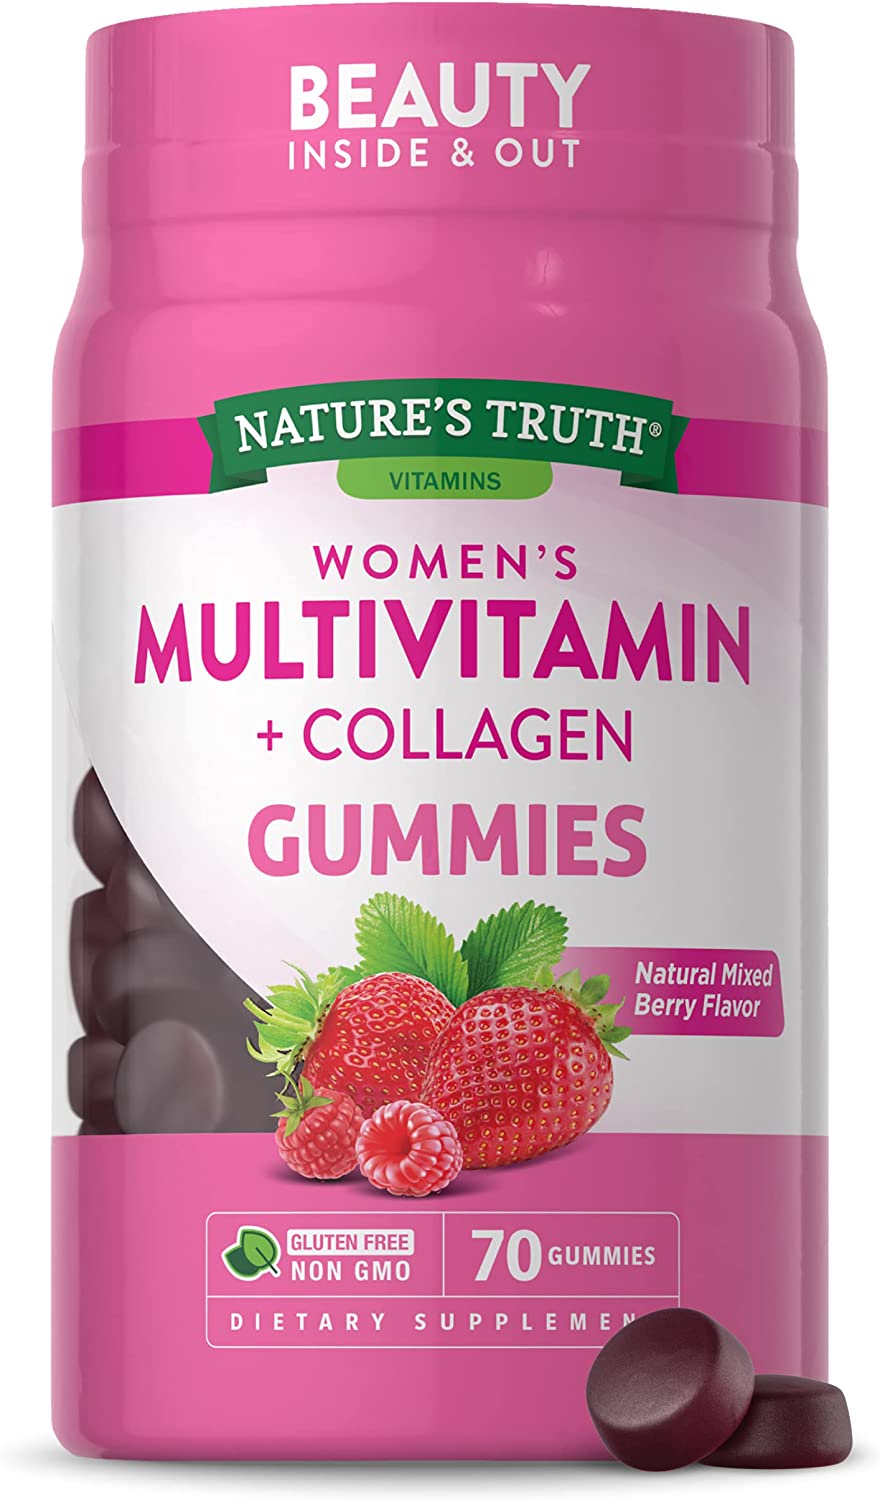 Women's Multivitamin with Collagen